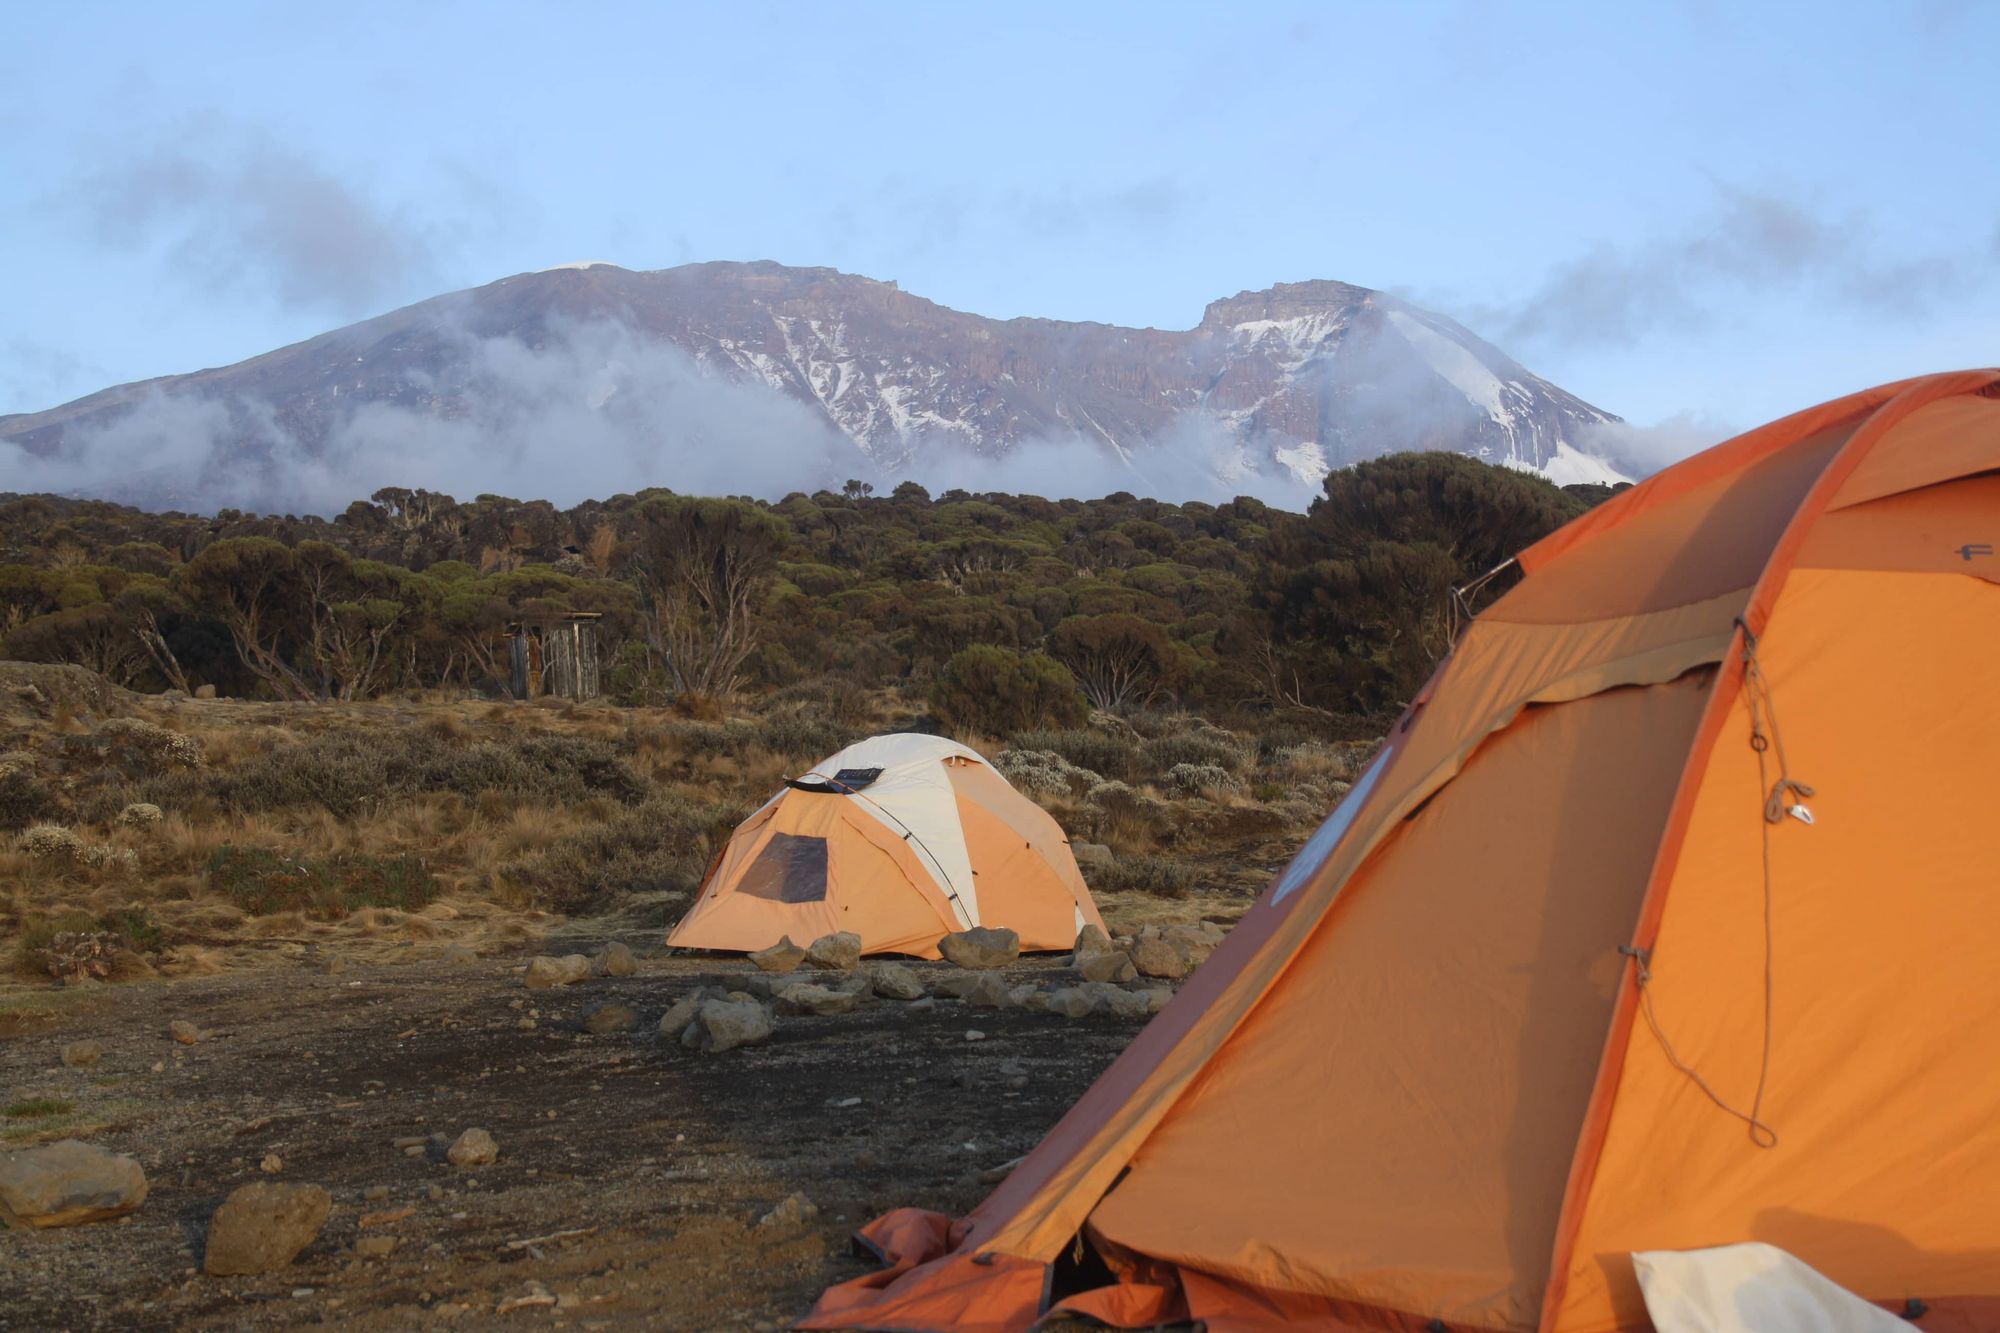 Fanny s'apprête à dormir au pied au Kilimandjaro avec ses accessoires indispensables au voyage